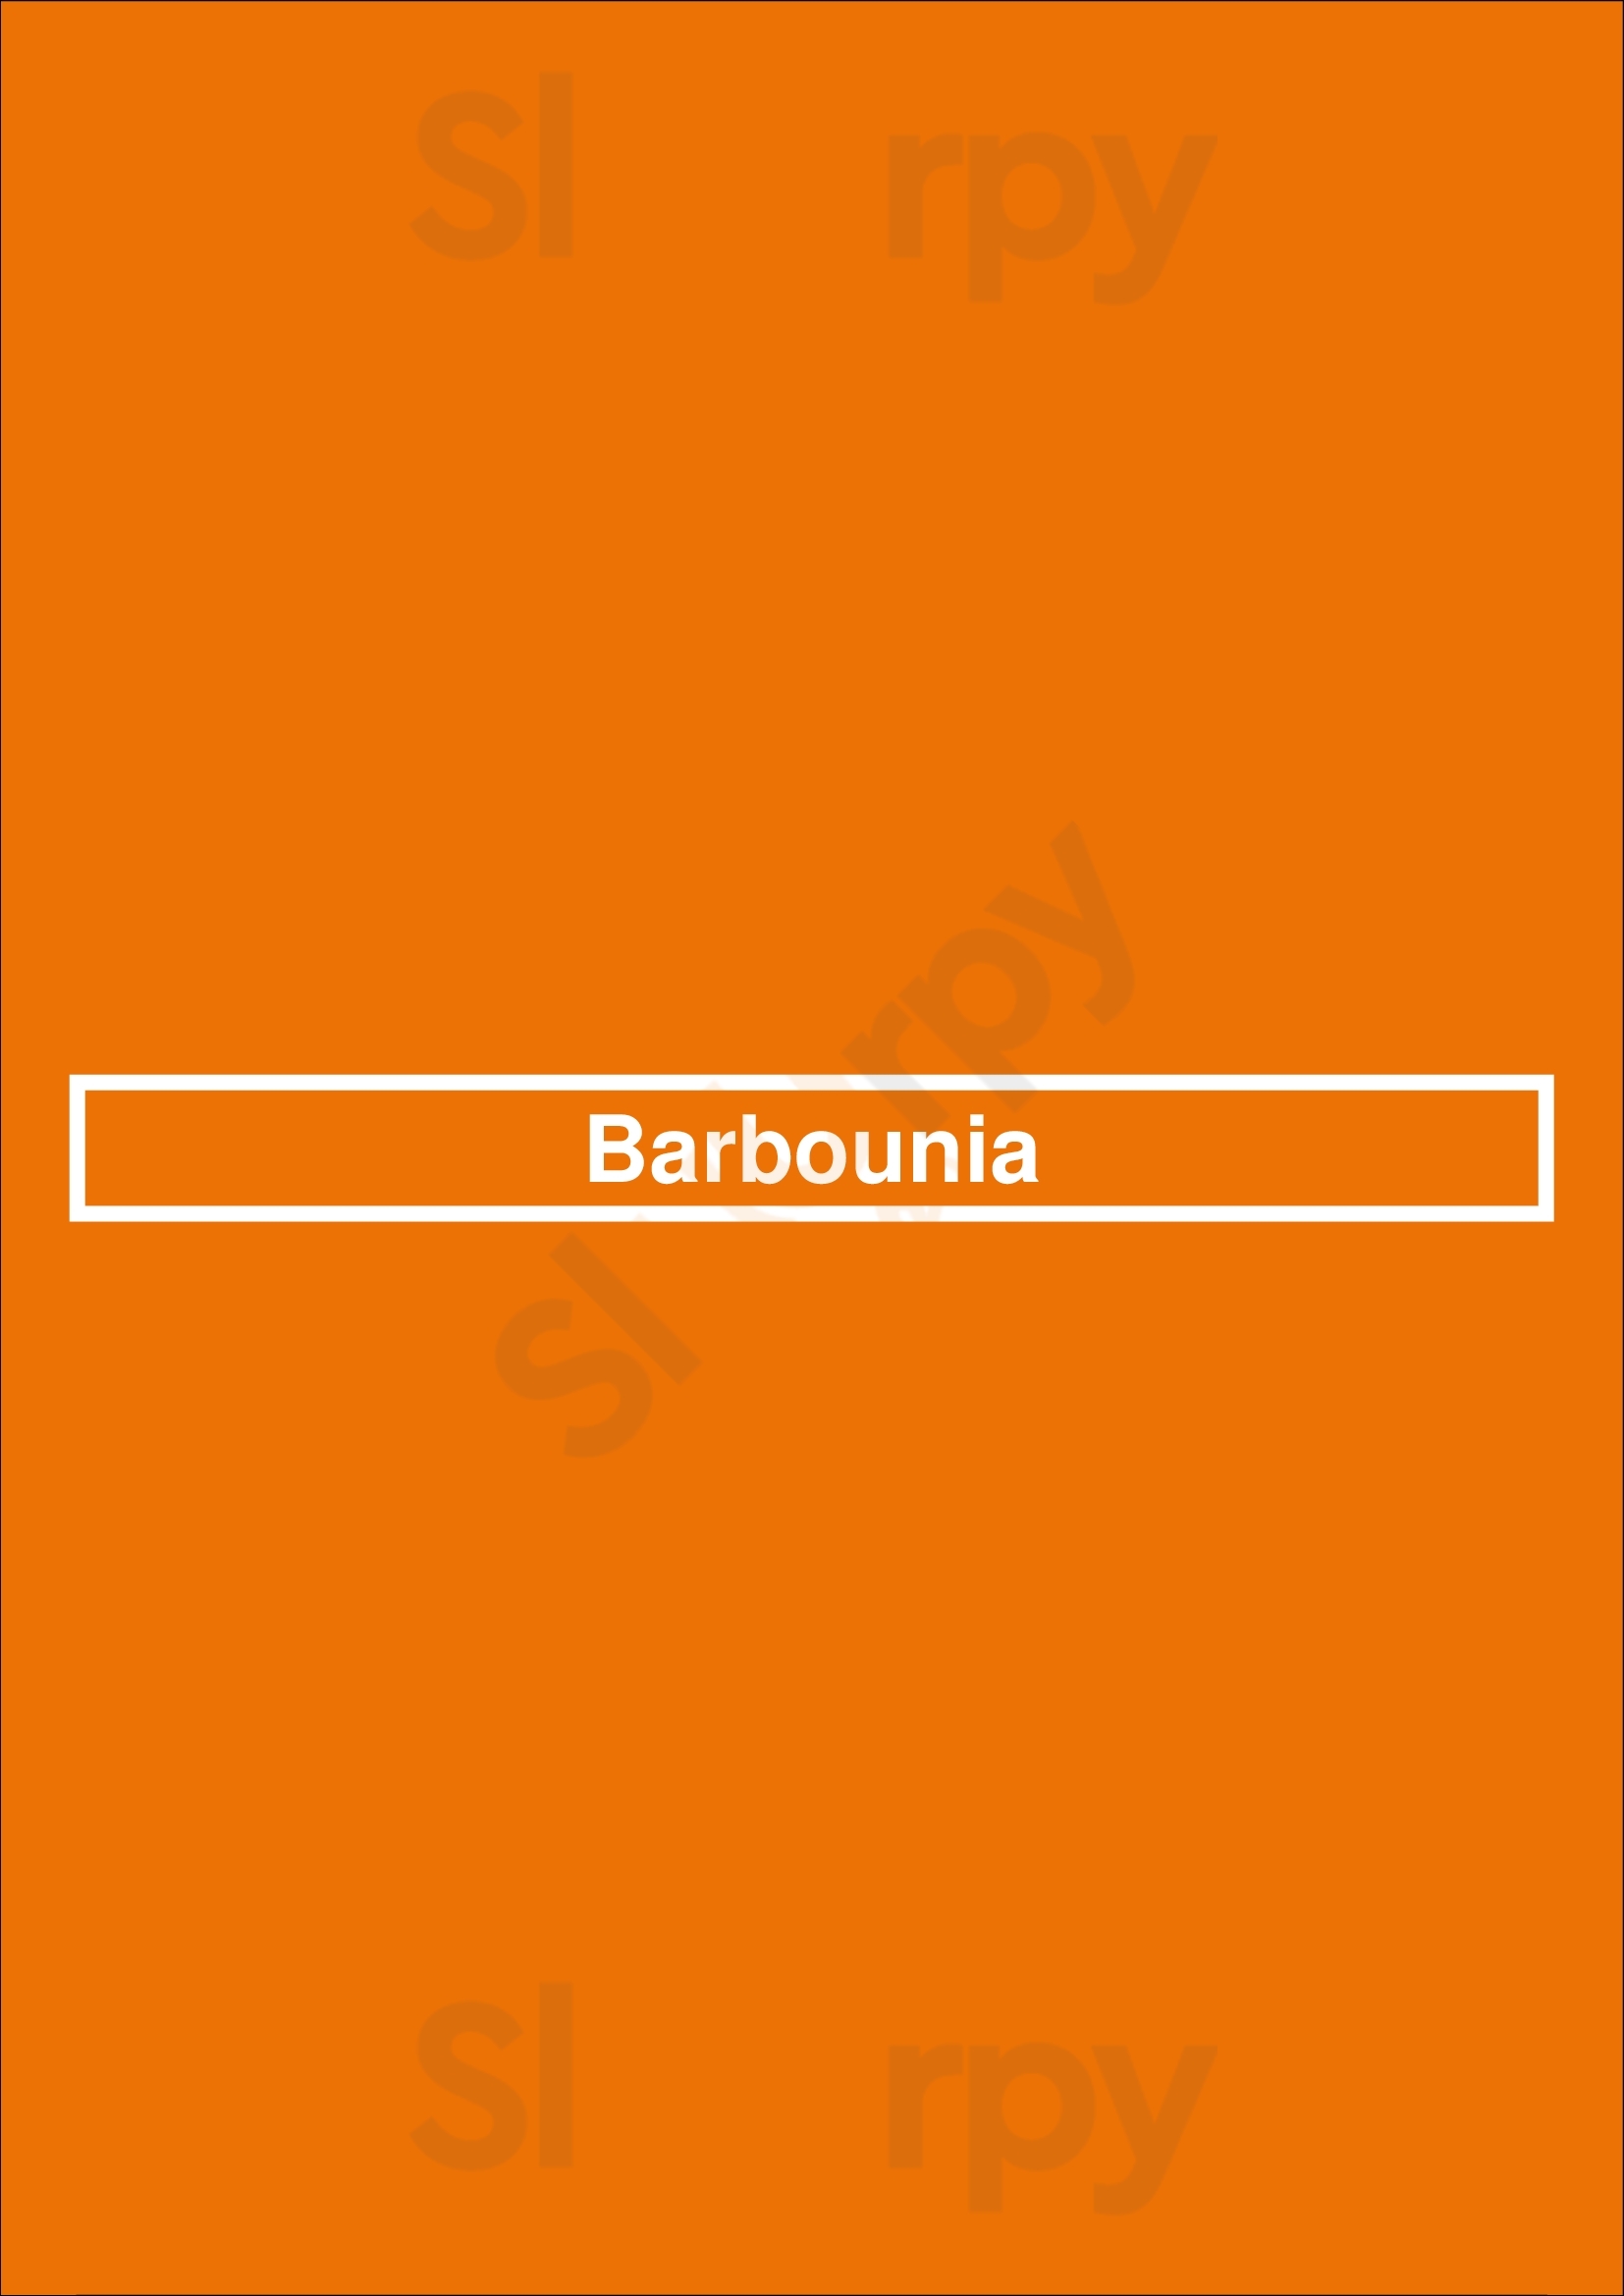 Barbounia New York City Menu - 1